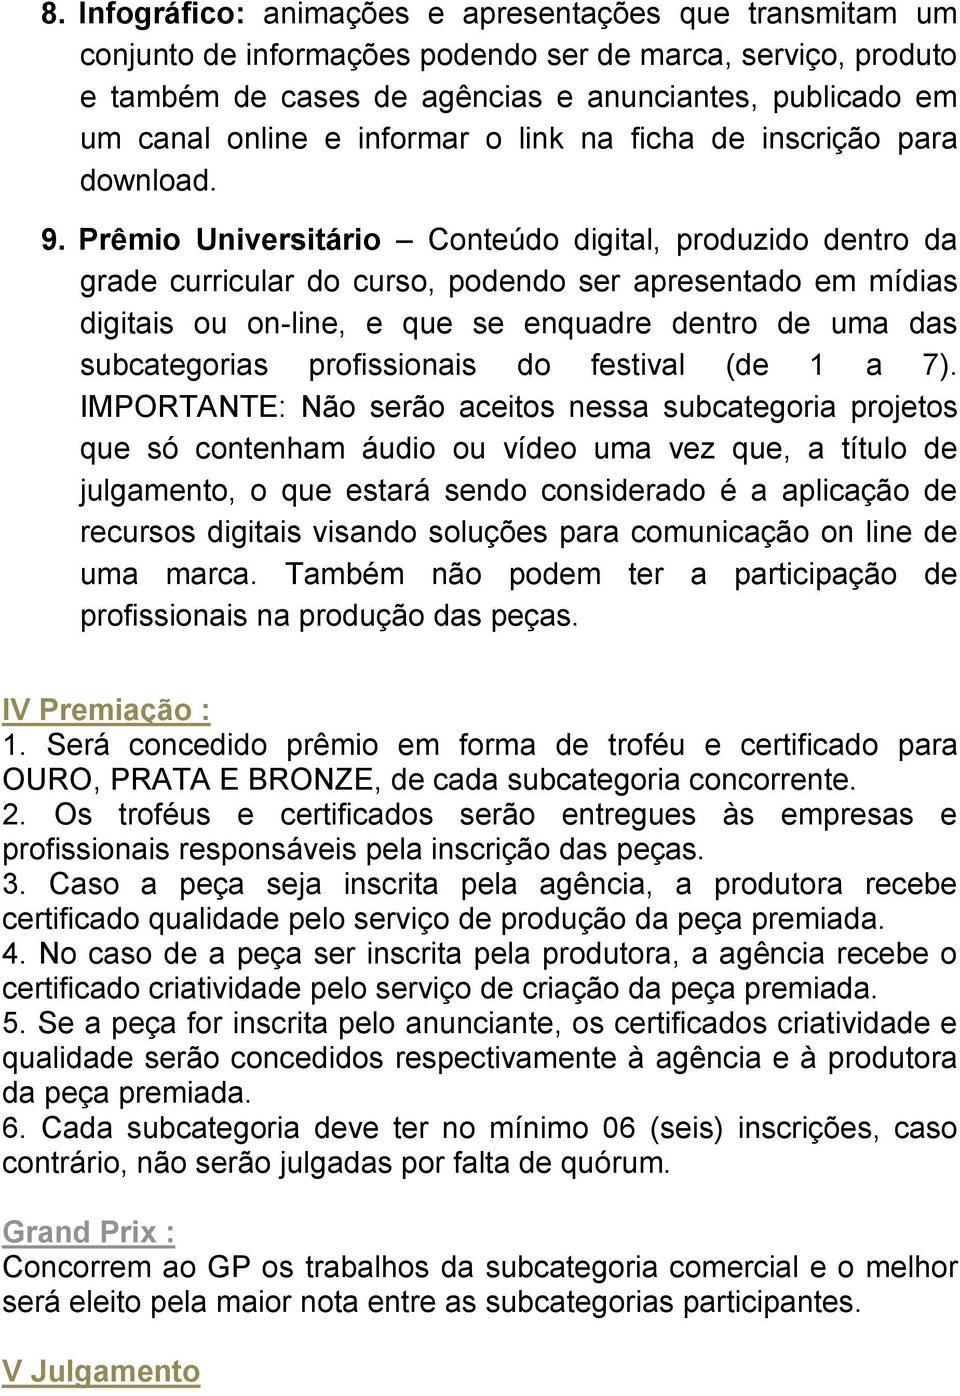 Prêmio Universitário Conteúdo digital, produzido dentro da grade curricular do curso, podendo ser apresentado em mídias digitais ou on-line, e que se enquadre dentro de uma das subcategorias